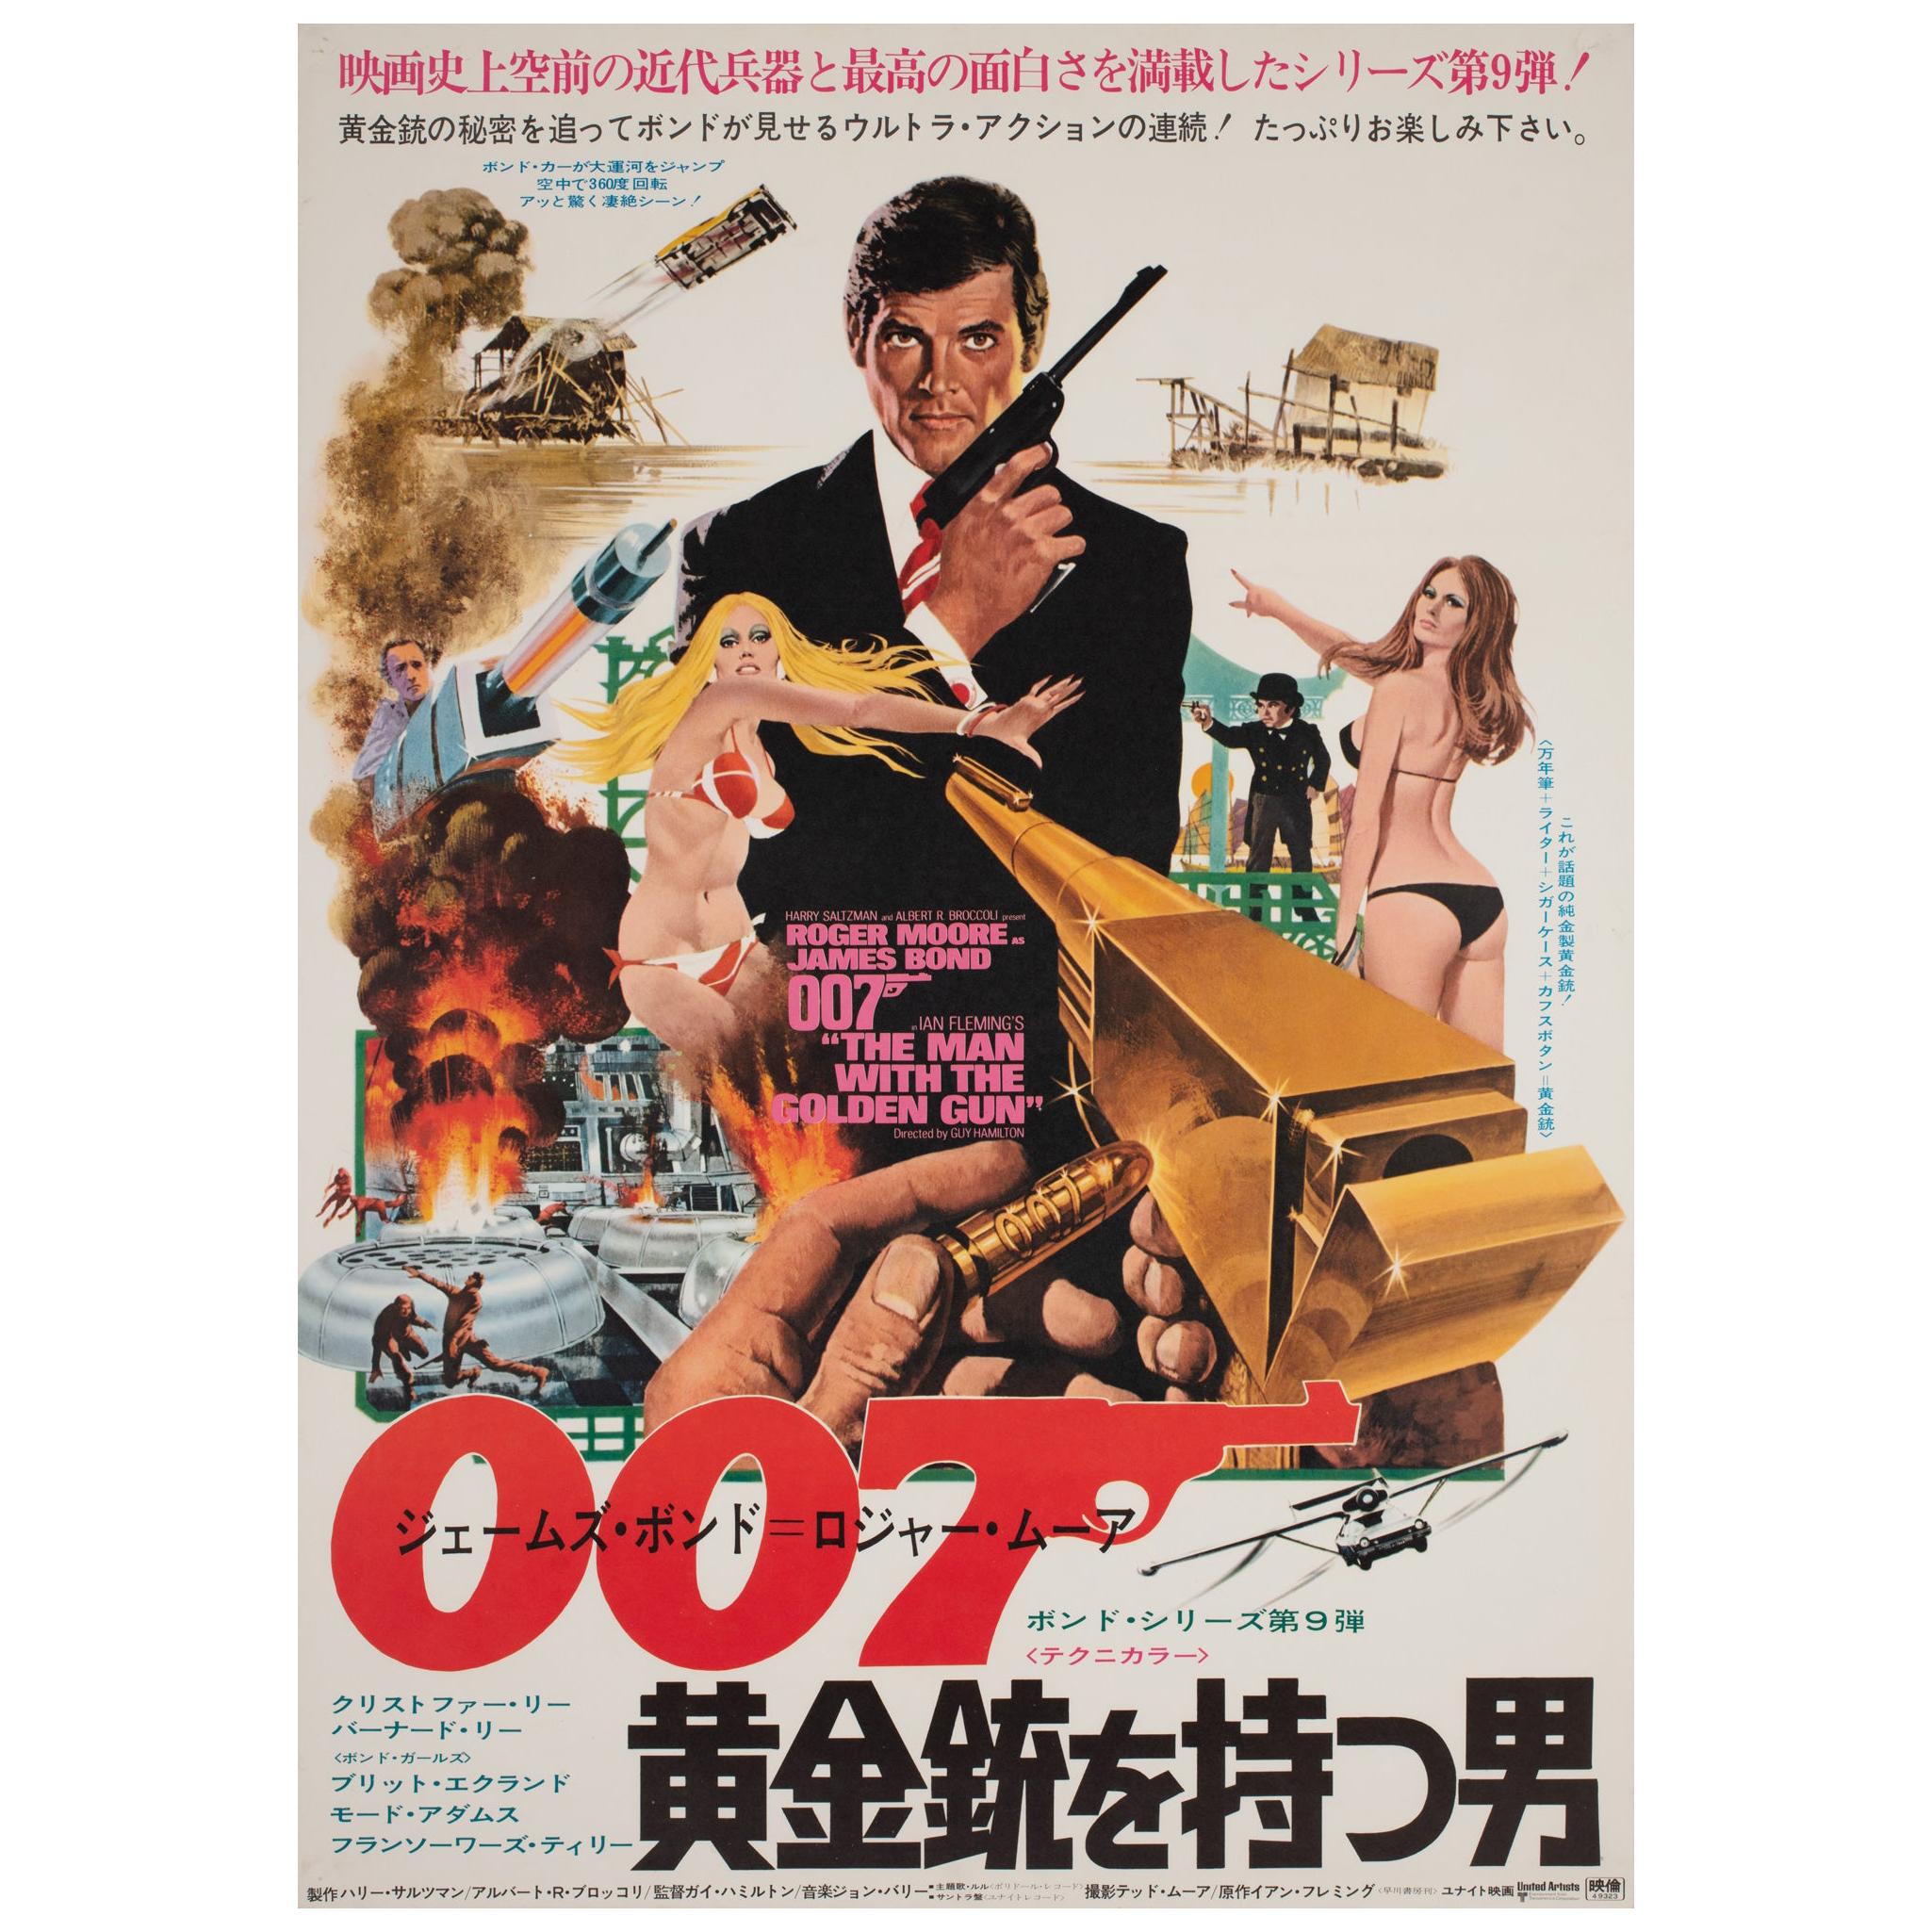 ""Der Mann mit dem goldenen Gewehr", 1973 Japanisches B2-Filmplakat, McGinnis